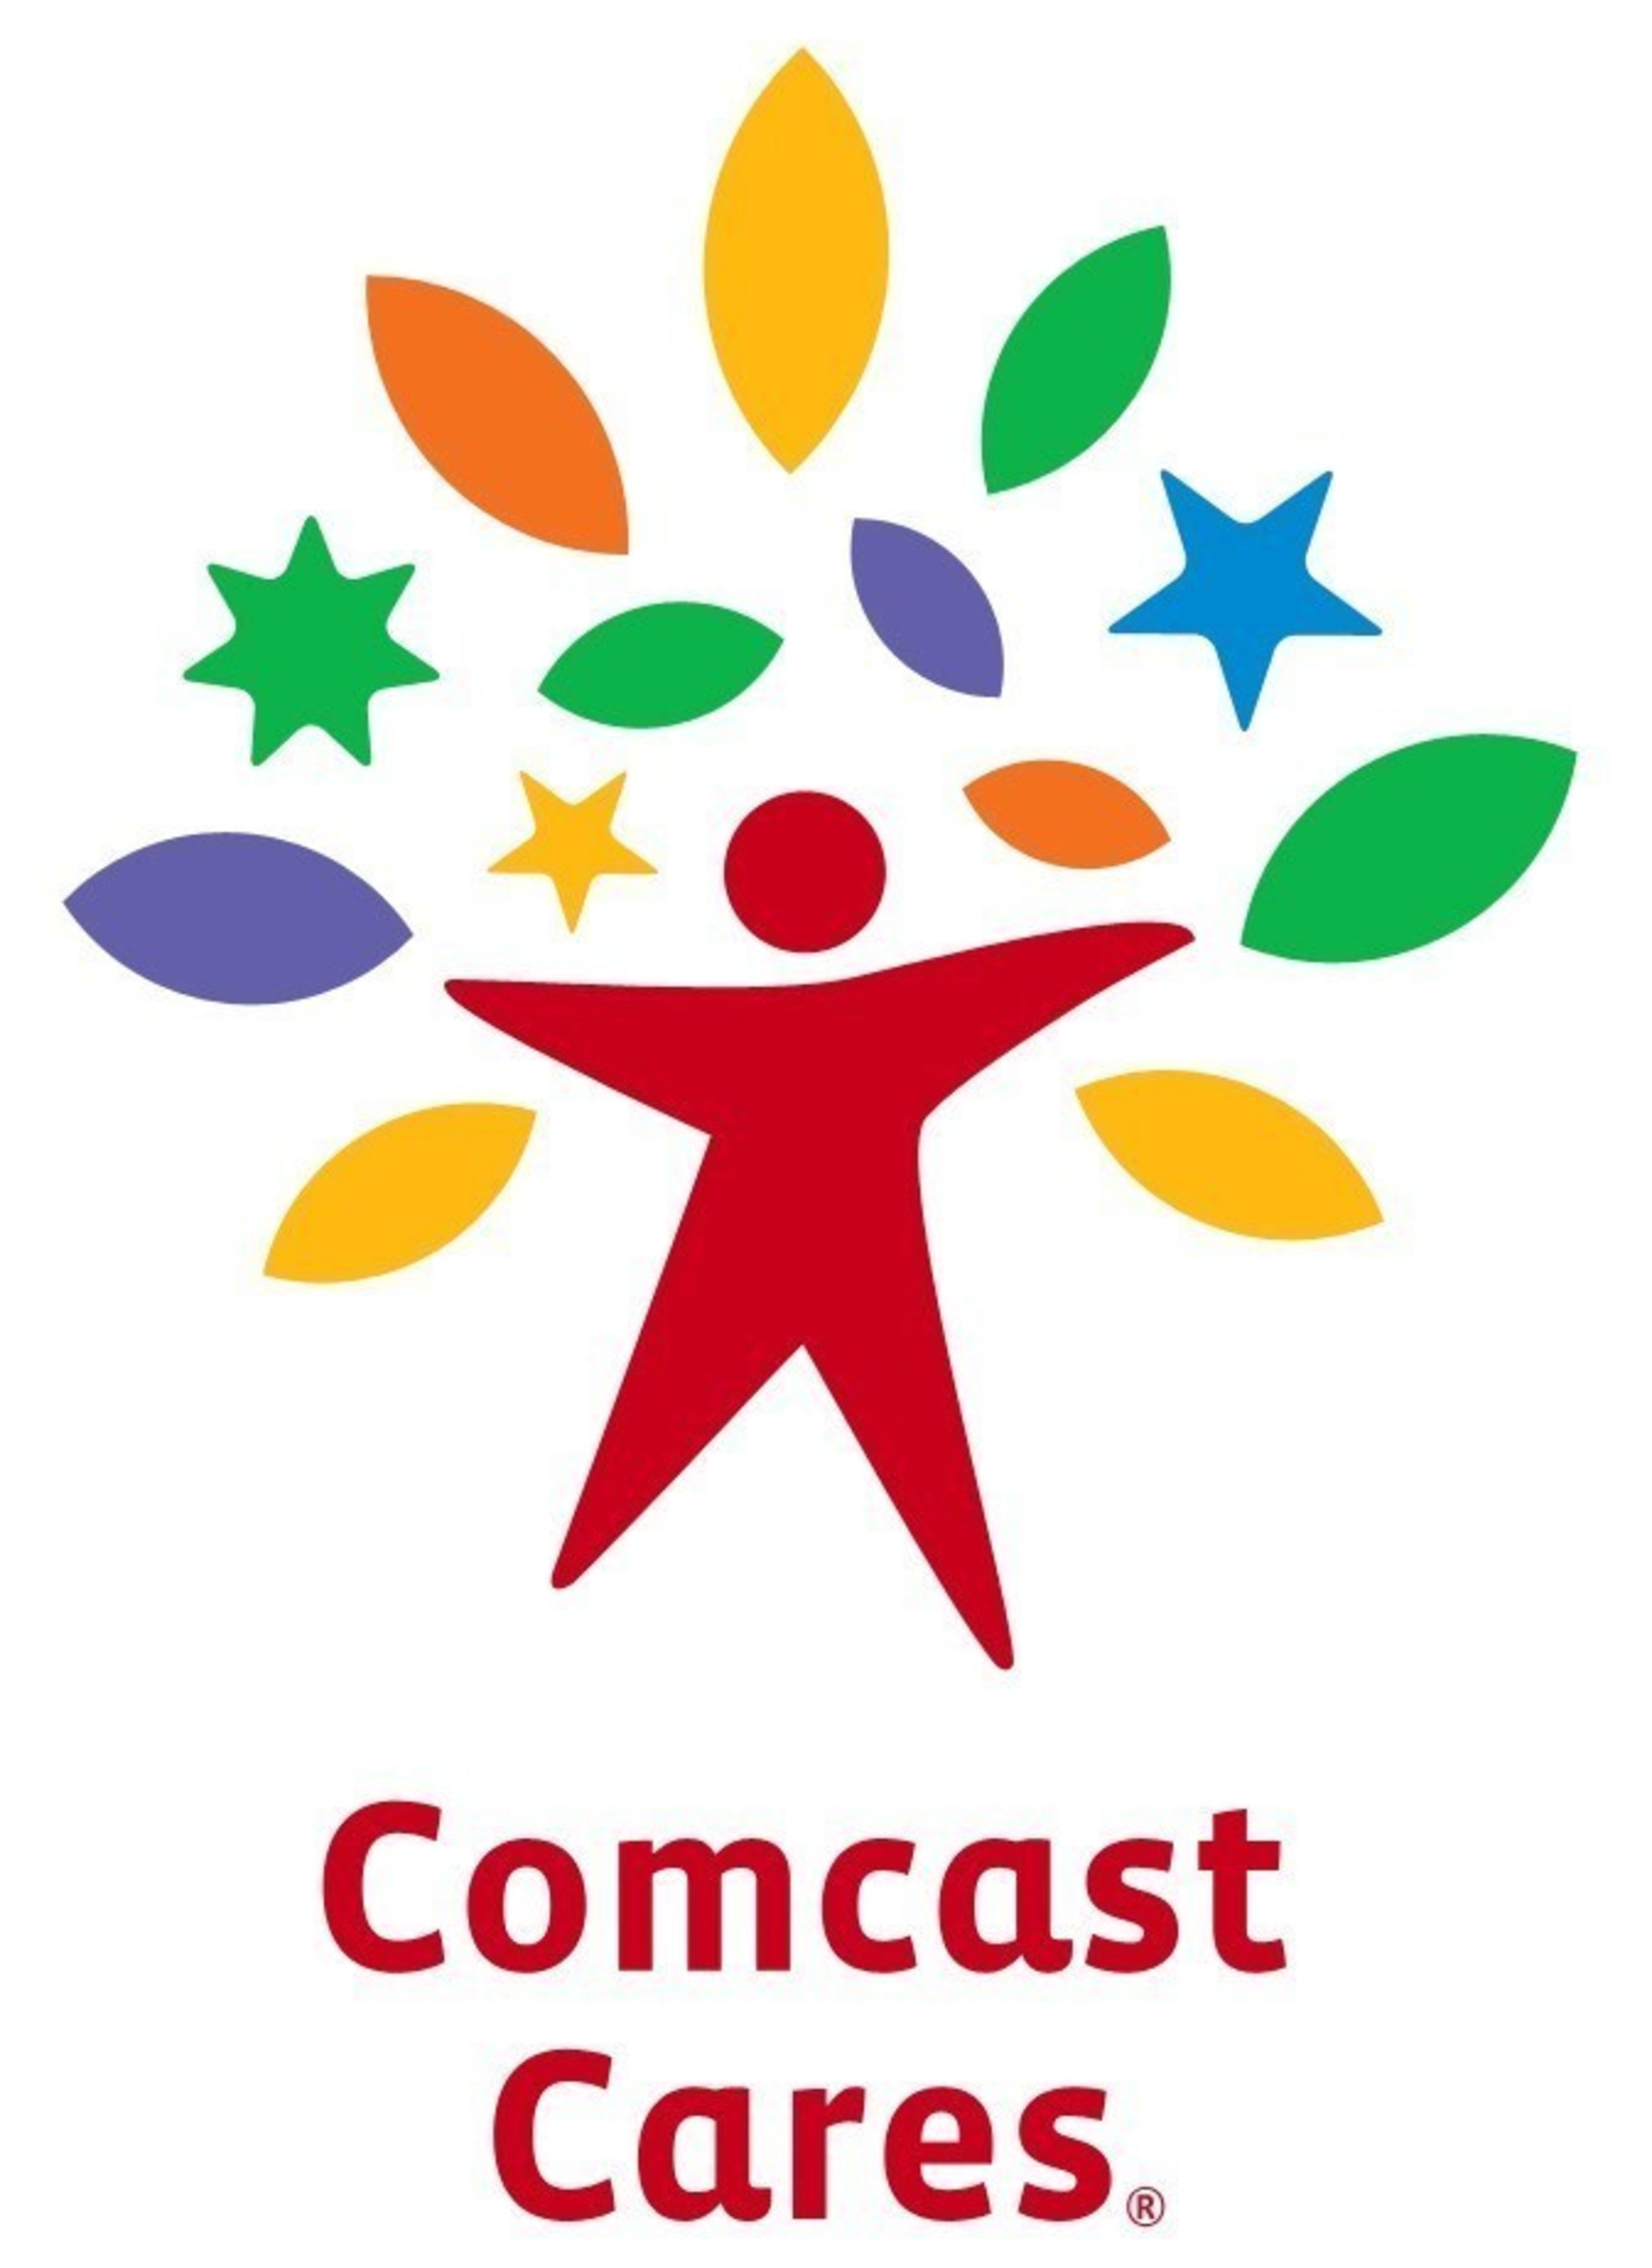 Comcast Cares logo